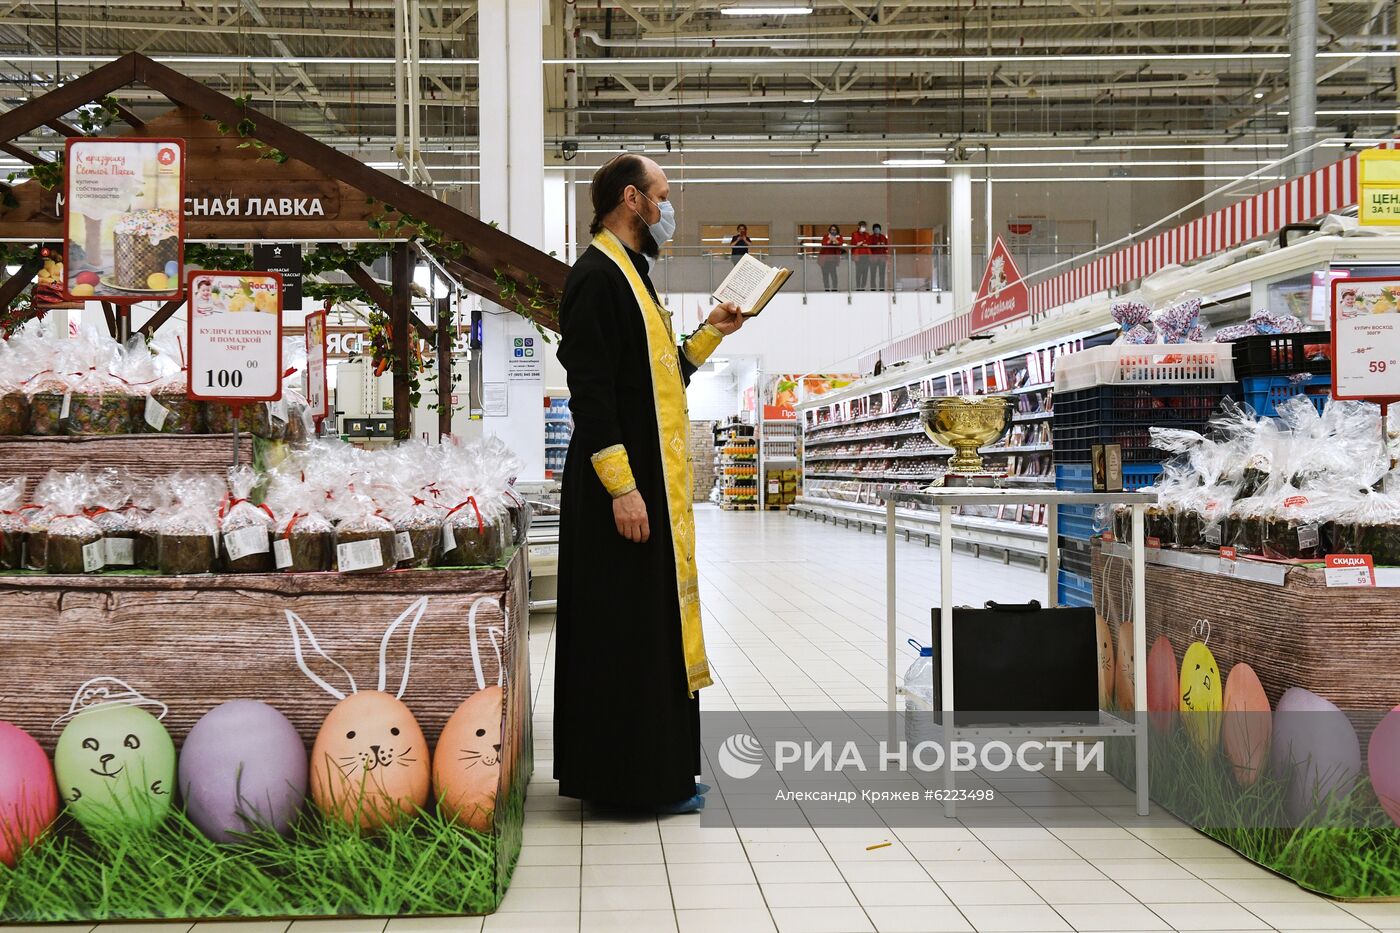 Освящение куличей в гипермаркете "Ашан" в Новосибирске 